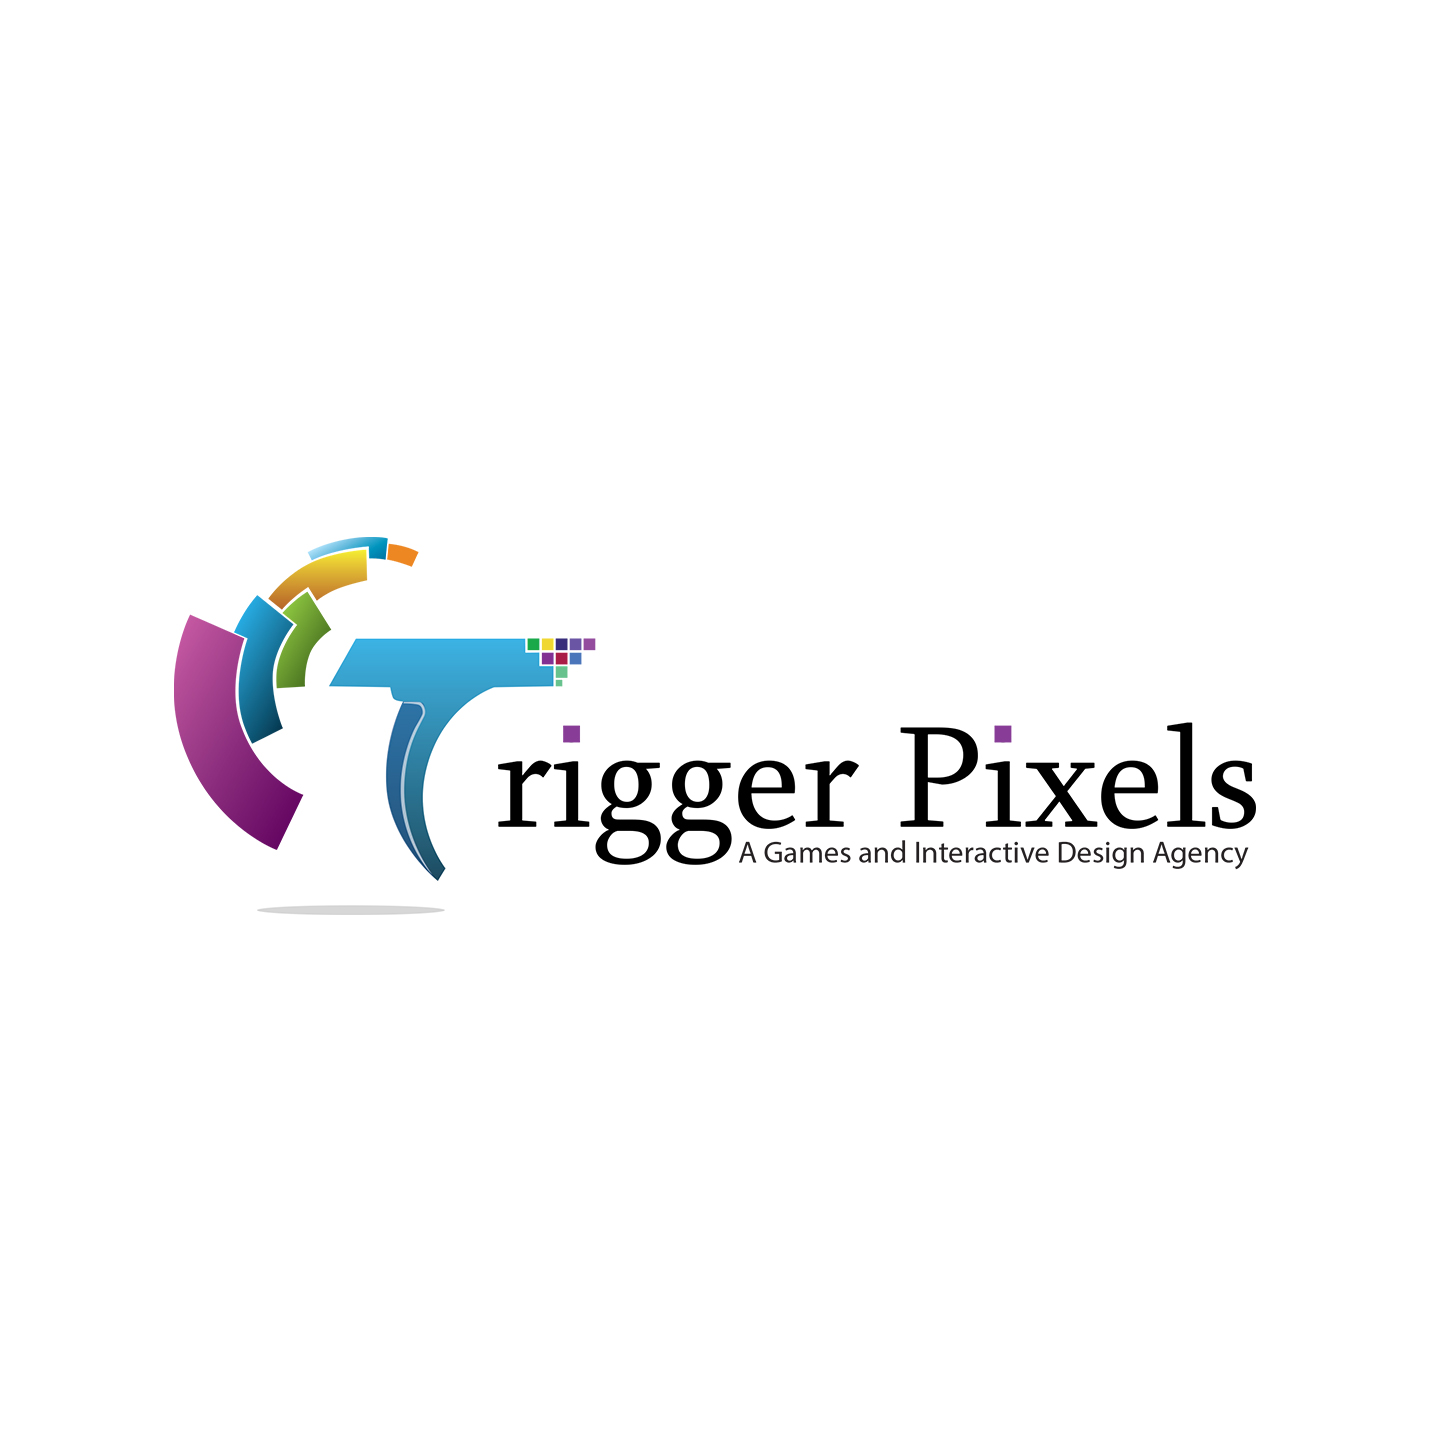 Trigger Pixels